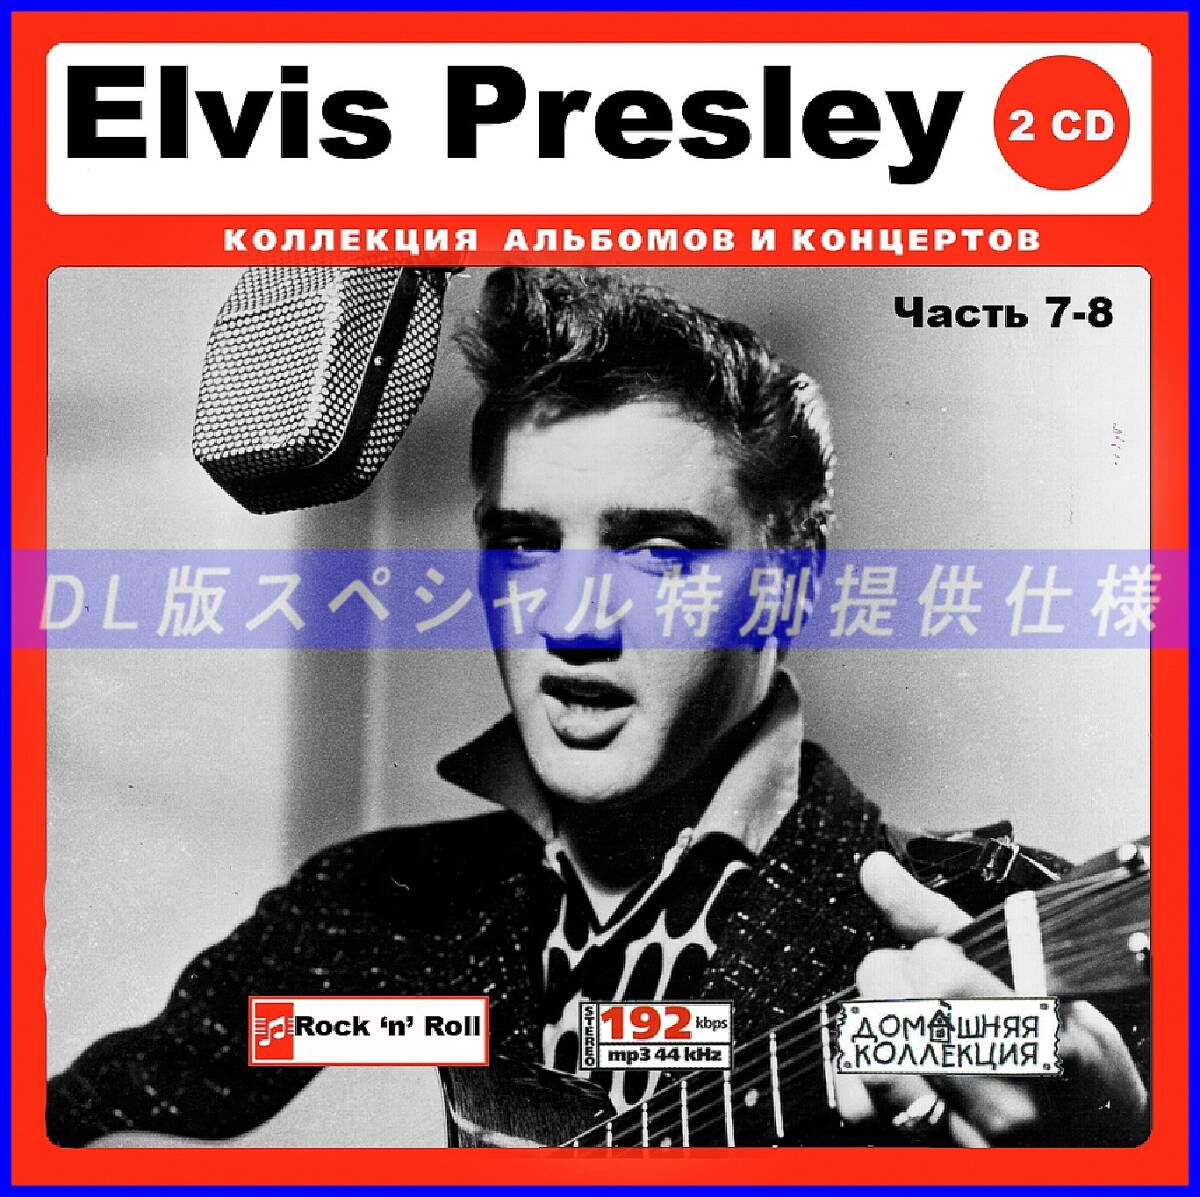 【特別仕様】ELVIS PRESLEY 多収録 [パート4] 311song DL版MP3CD 2CD♪_画像1